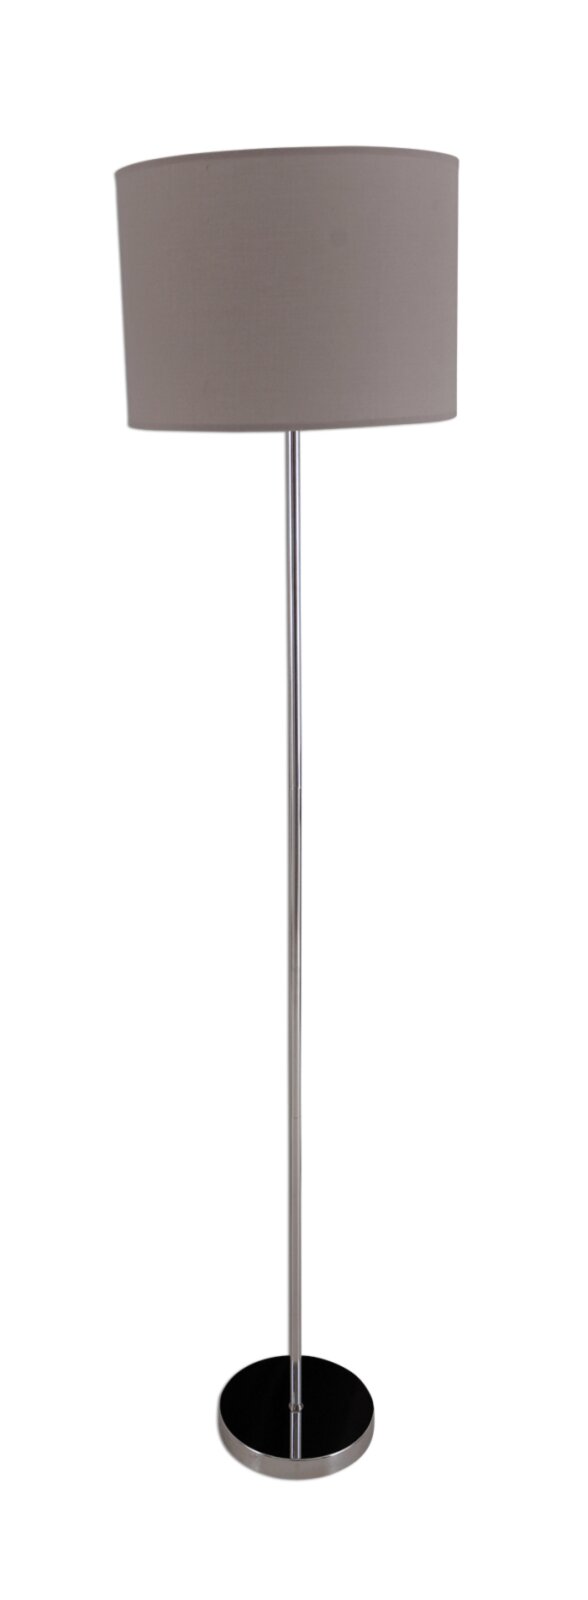 Stehlampe NEW YORK - grau - 160 cm | Online bei ROLLER kaufen